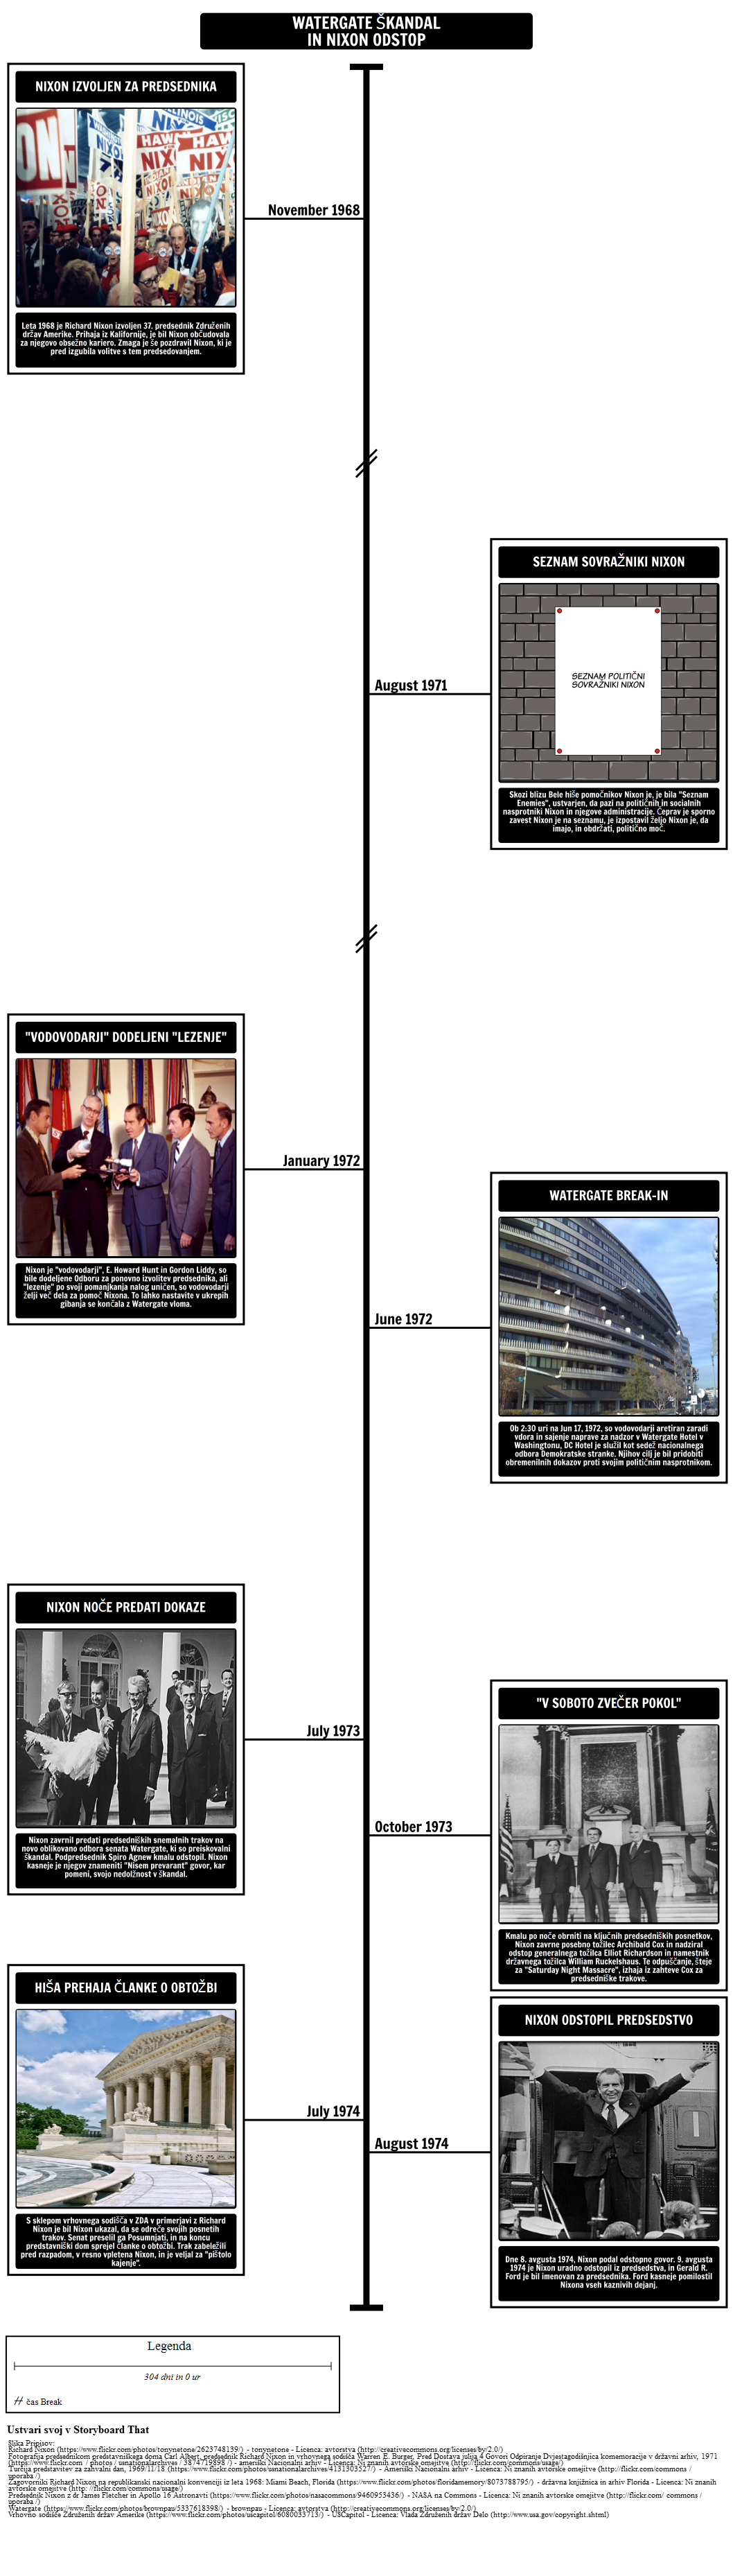 Afera Watergate Timeline in Nixon je Odstop